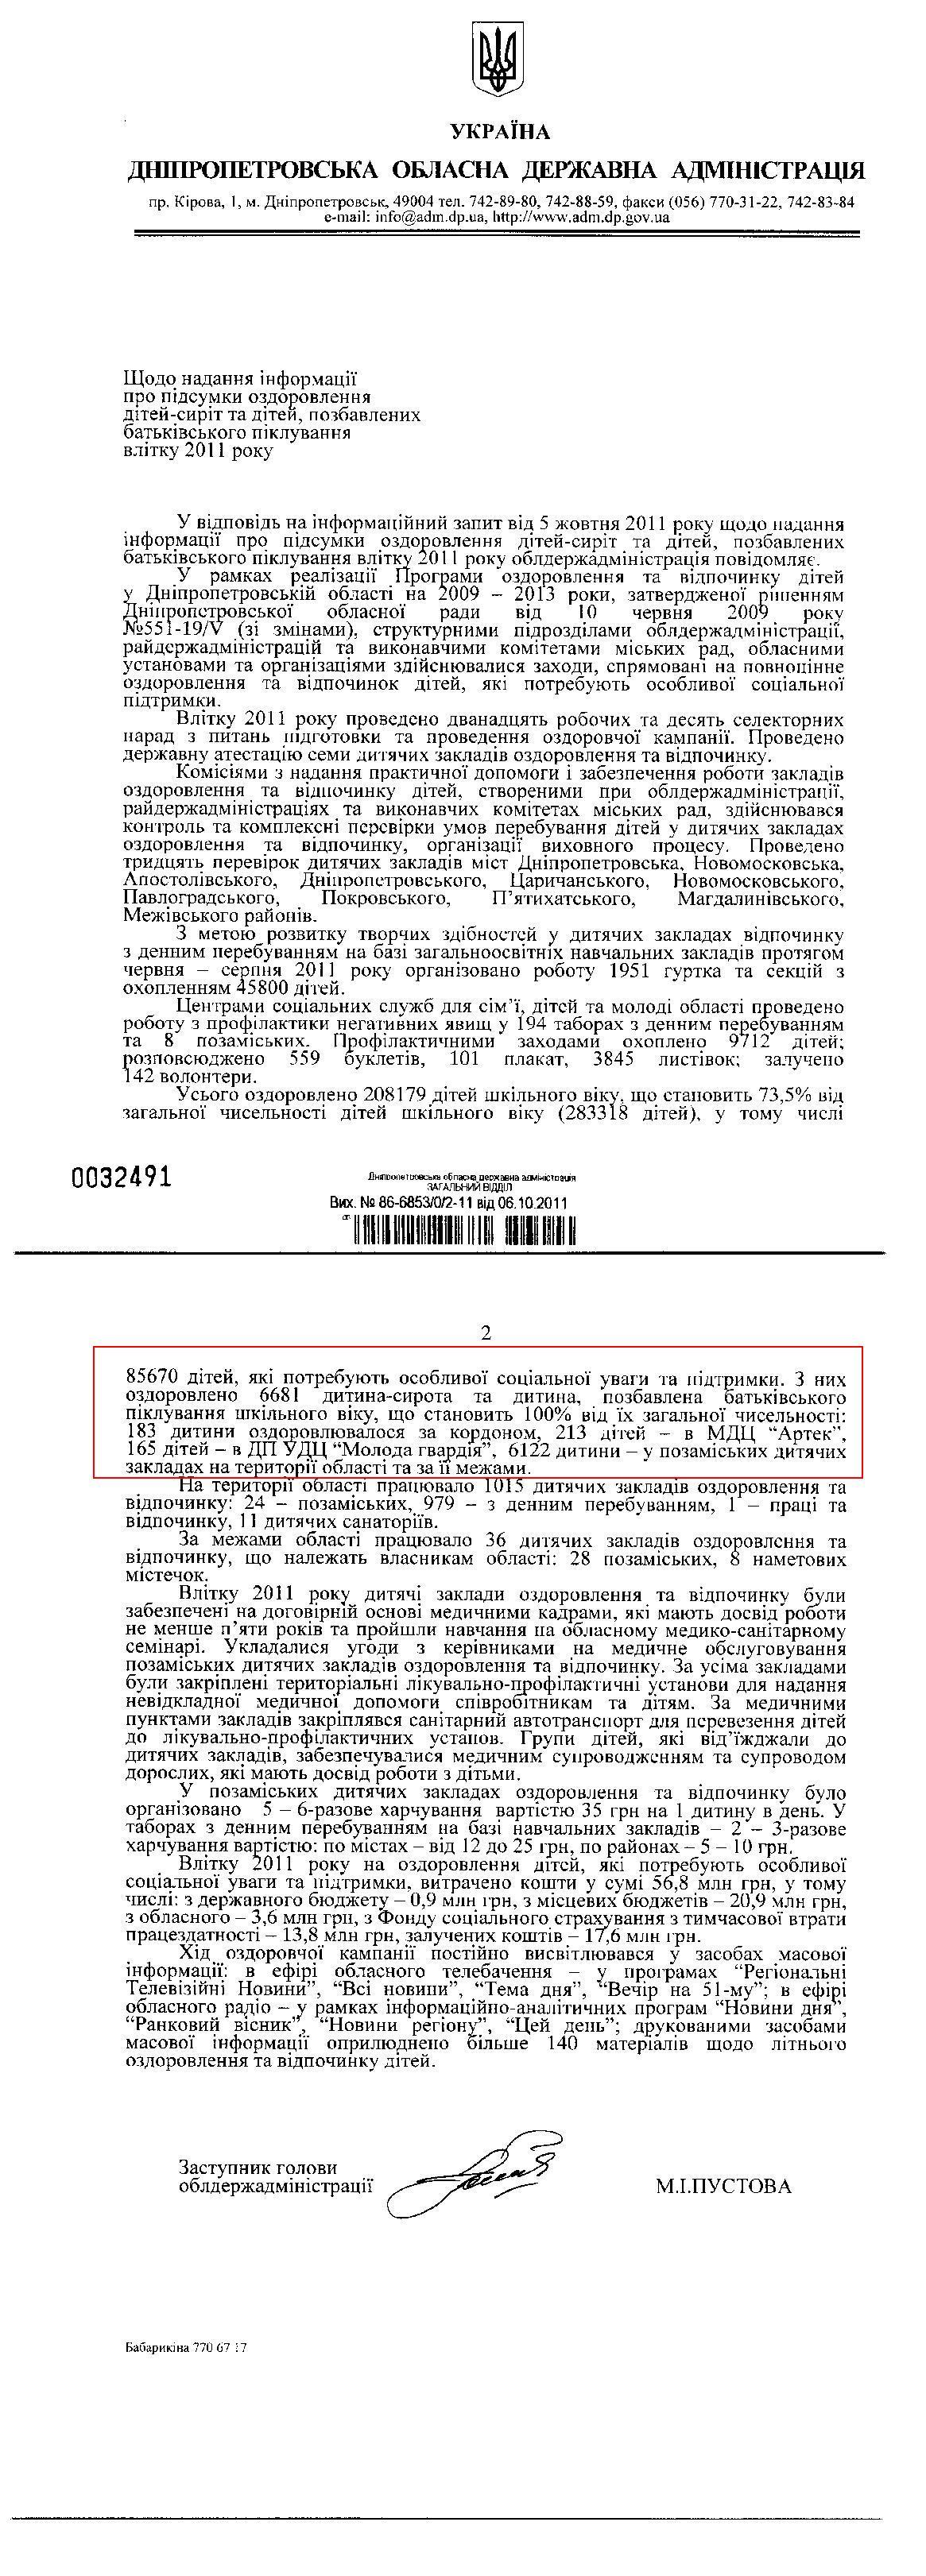 Письмо заместителя председателя Днепропетровской облгосадминистрации М.И.Пустовой